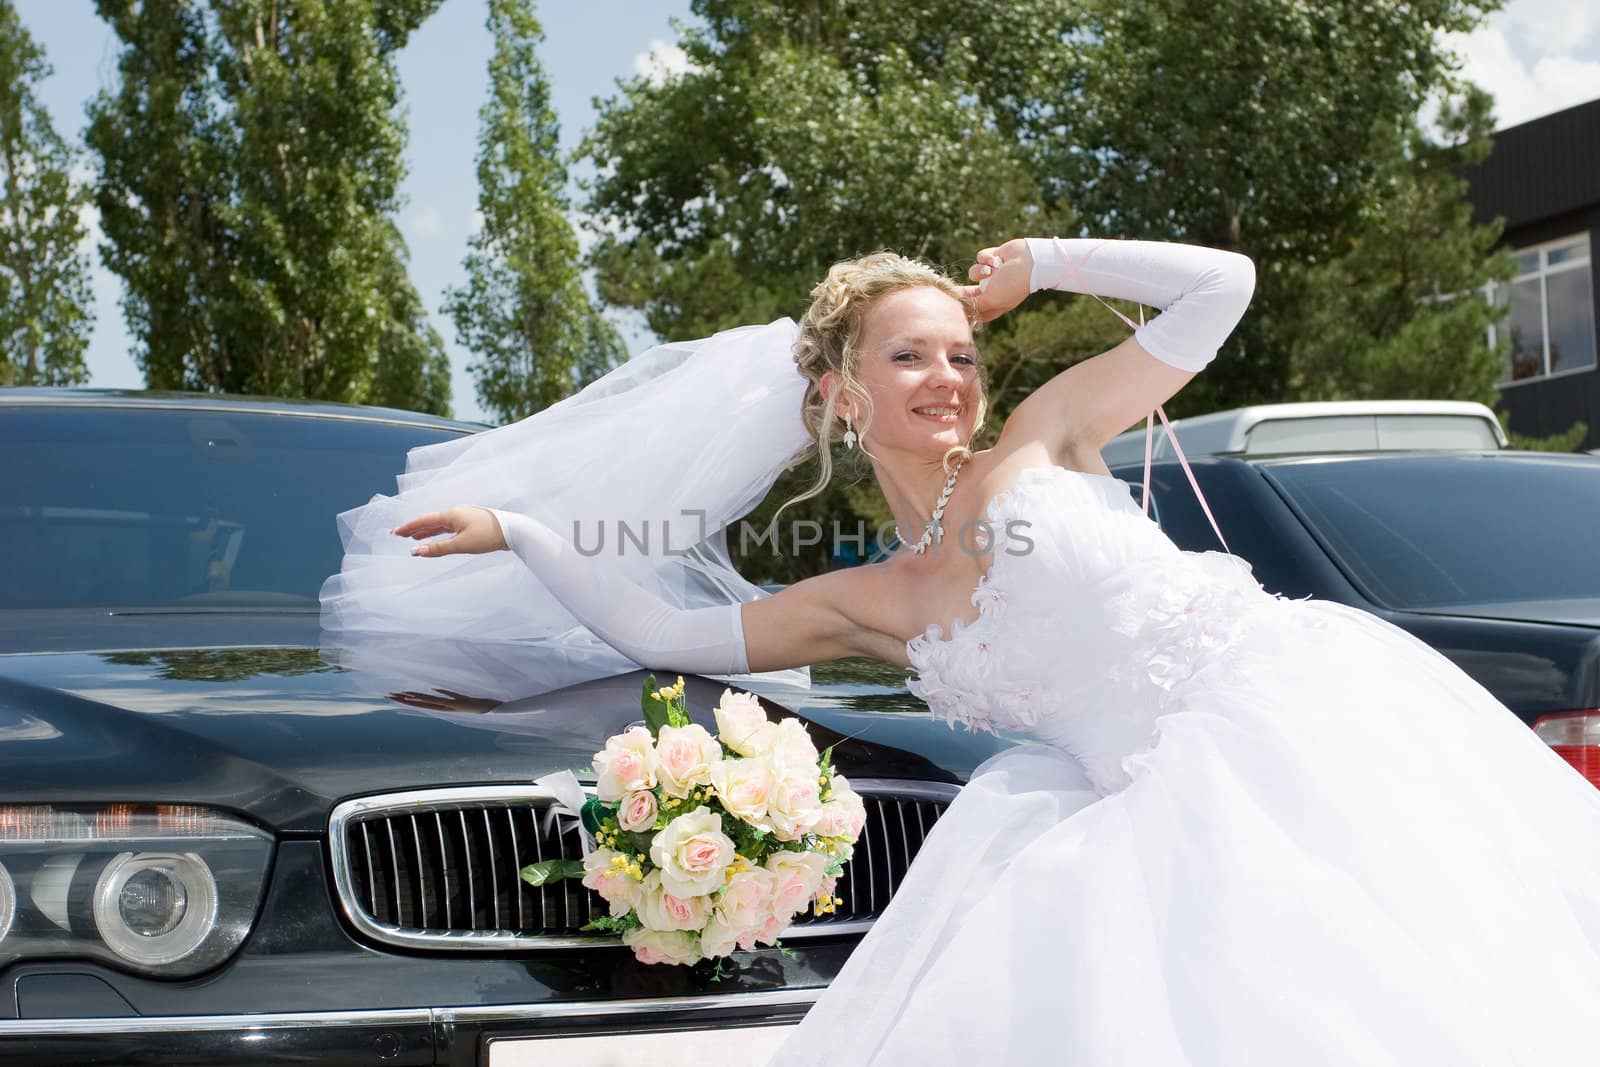 a happy bride by a car by vsurkov